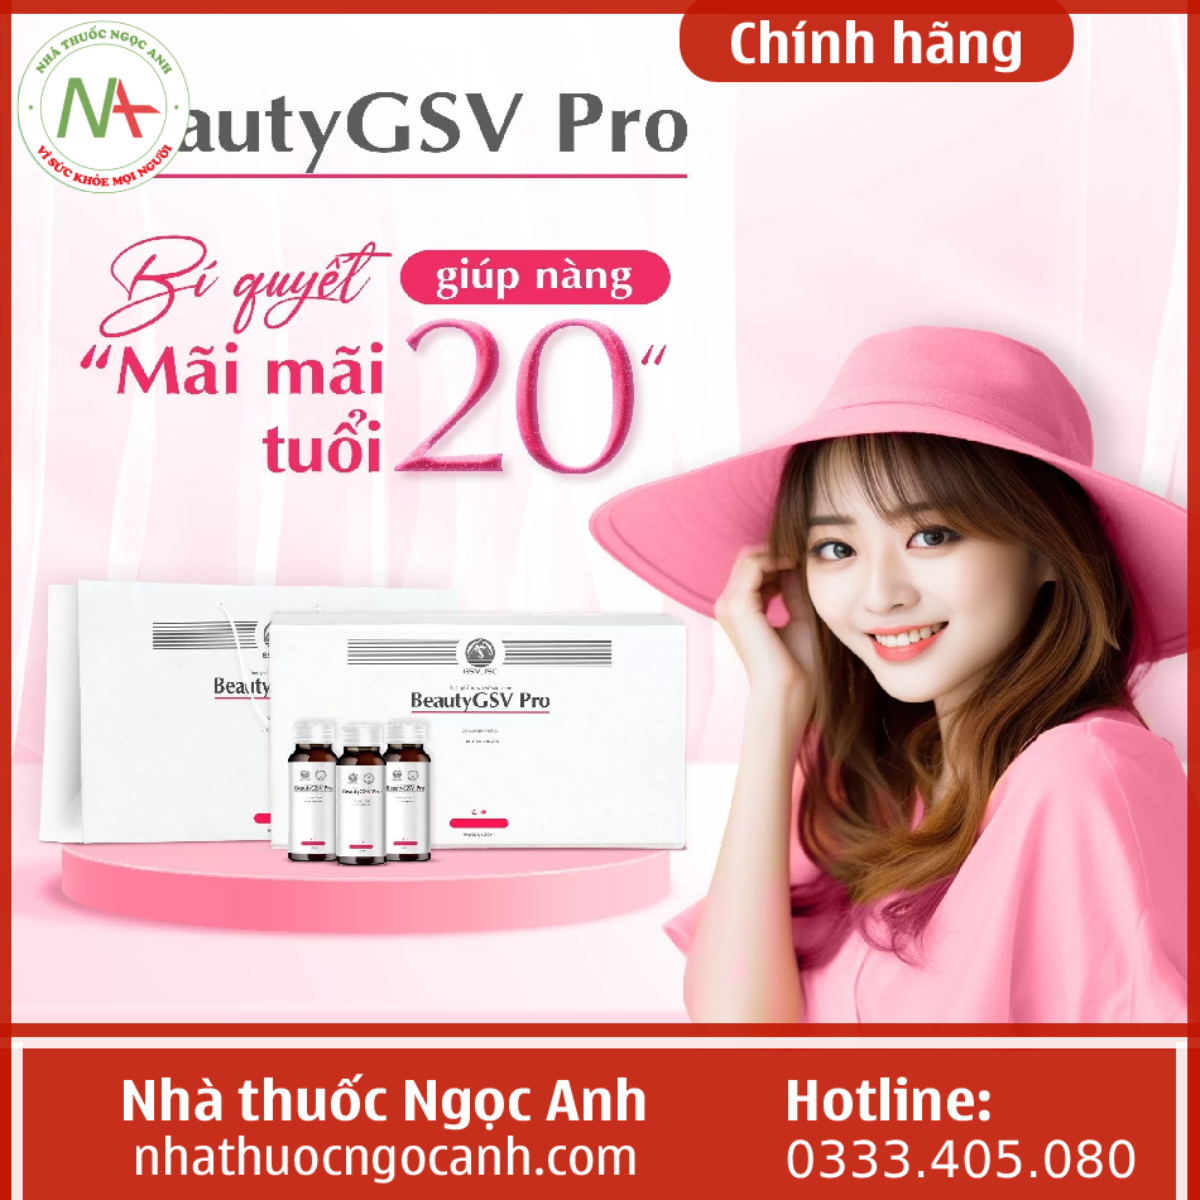 Beauty GSV Pro